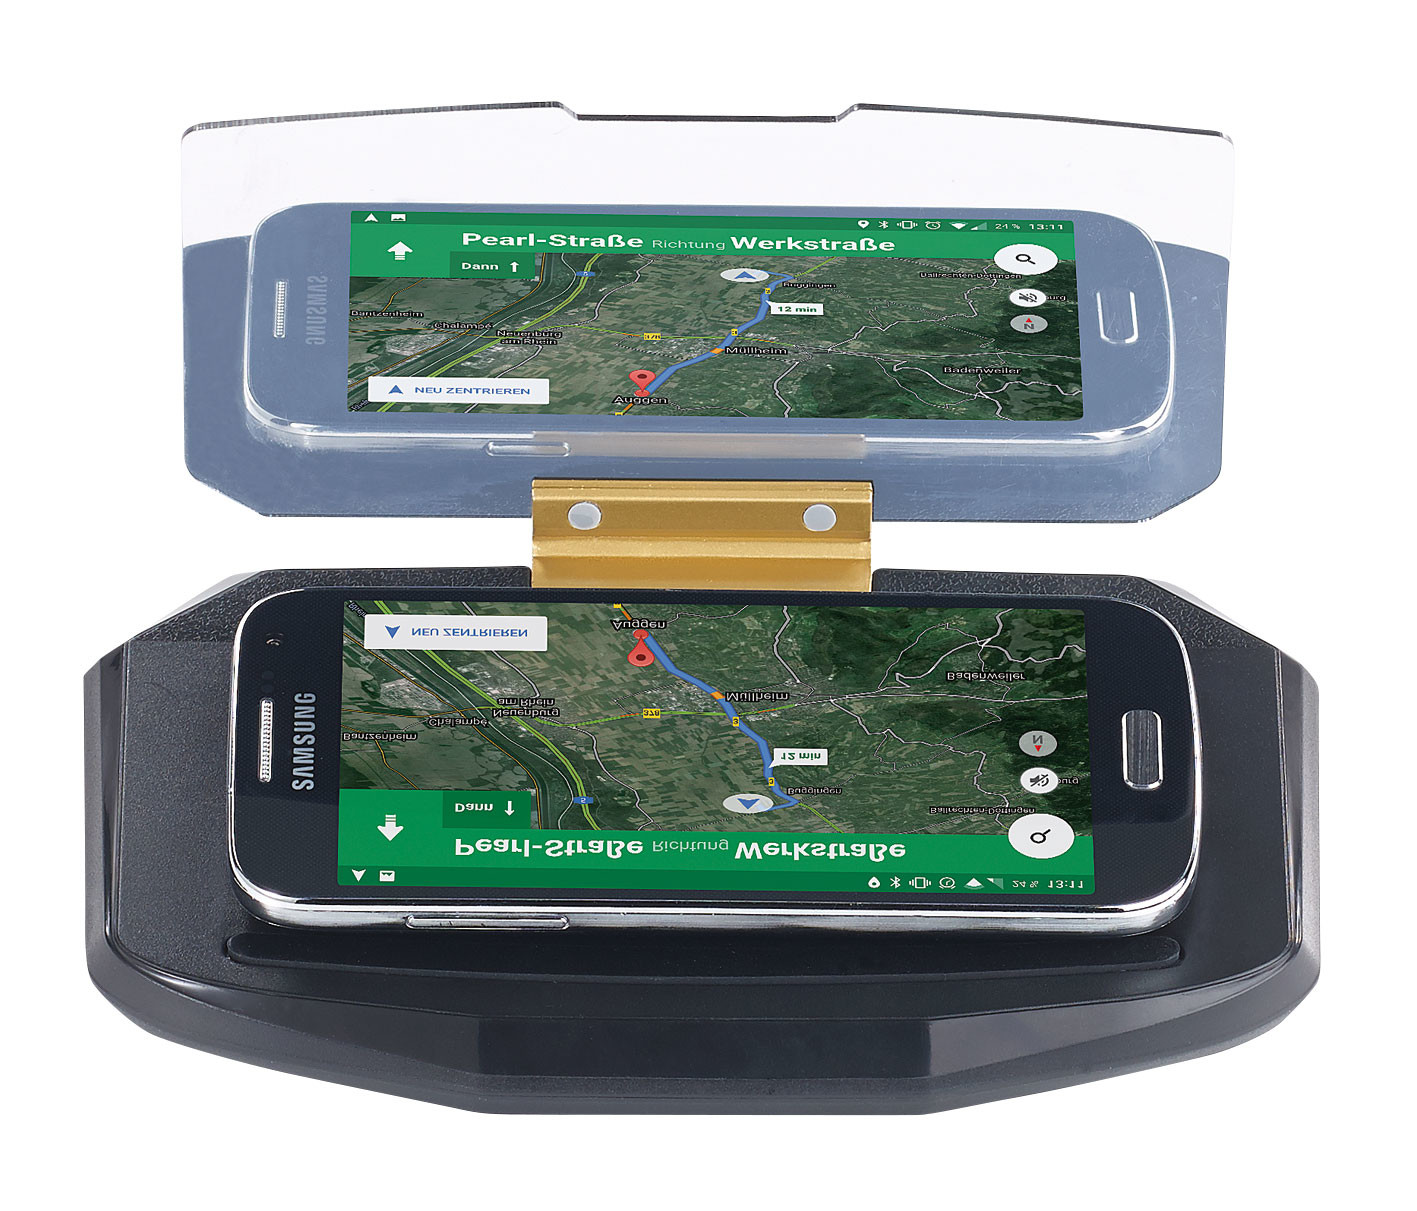 Garmin : un affichage tête haute pour un GPS sur iPhone